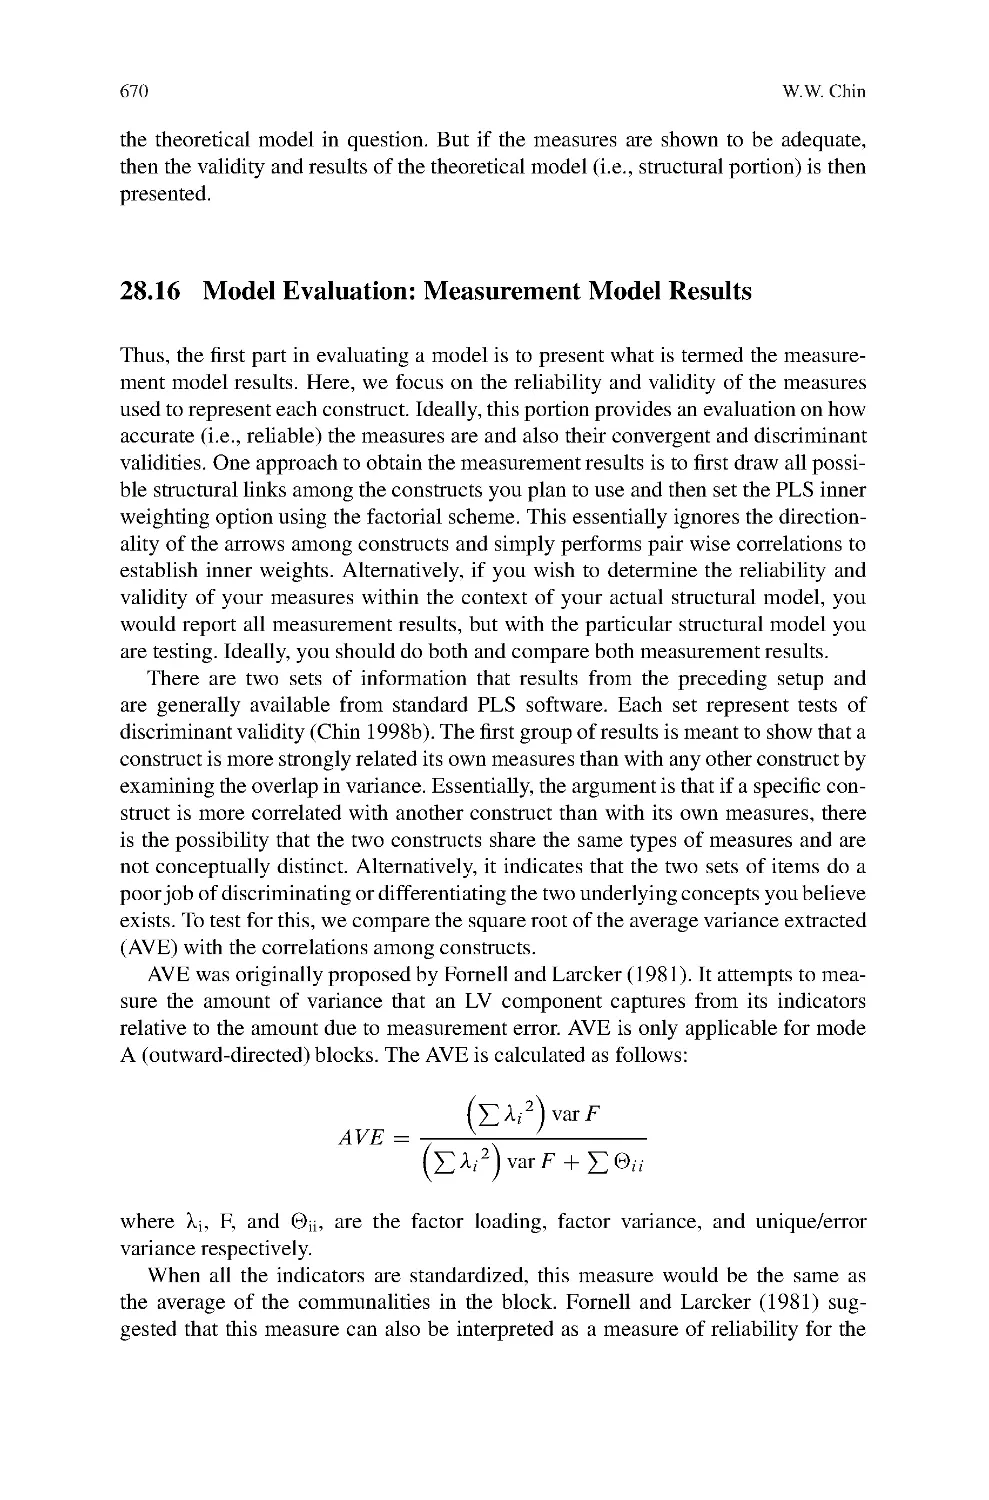 28.16 Model Evaluation: Measurement Model Results